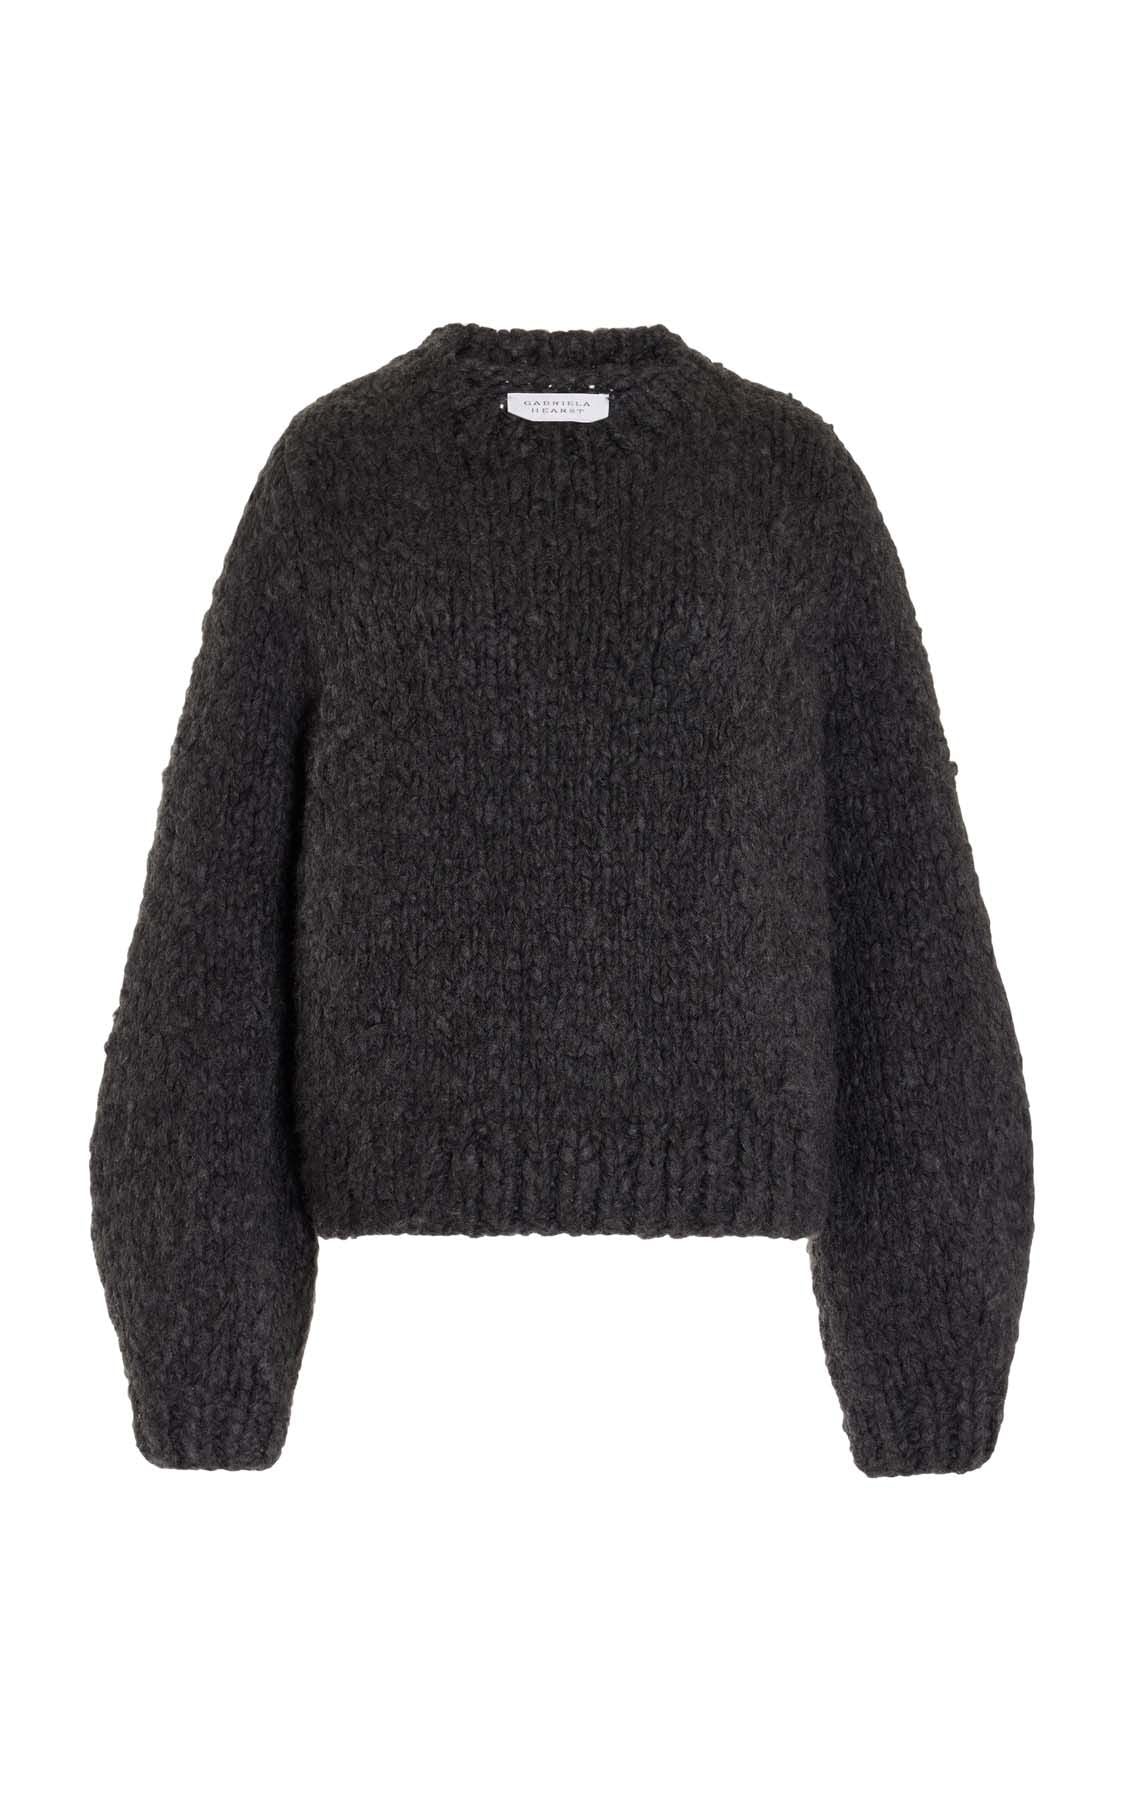 Clarissa Sweater in Welfat Cashmere